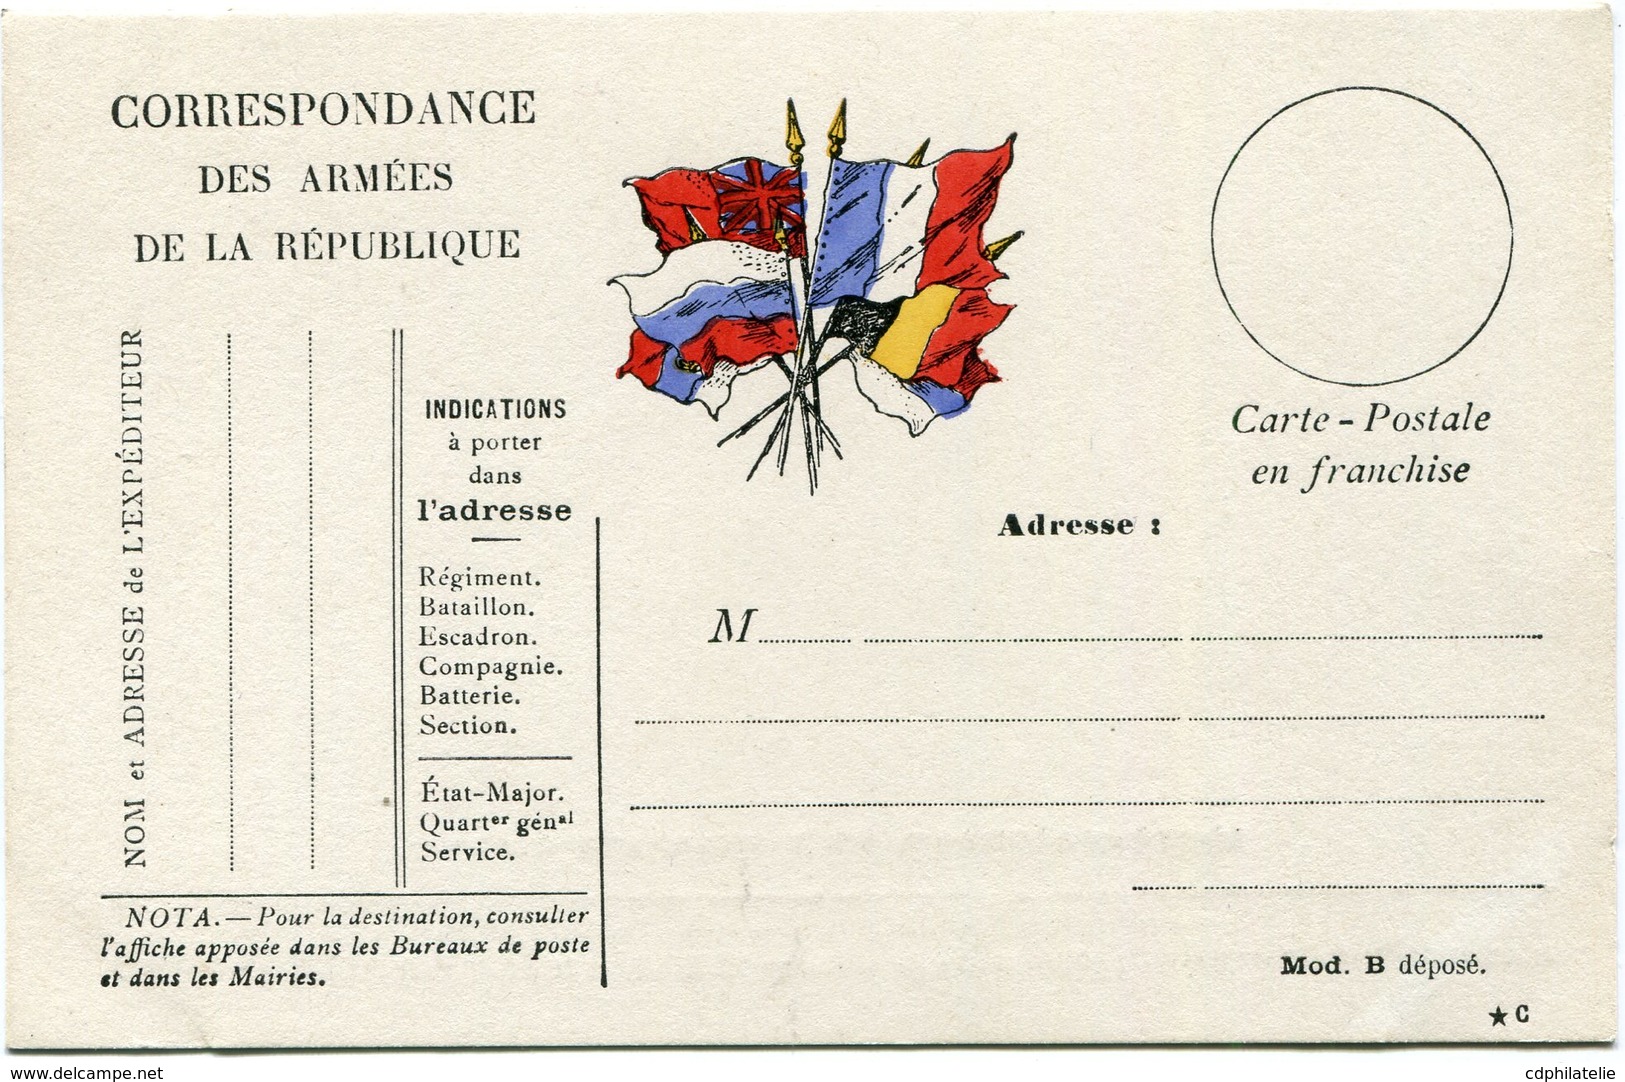 FRANCE CARTE DE FRANCHISE MILITAIRE NEUVE - Lettres & Documents